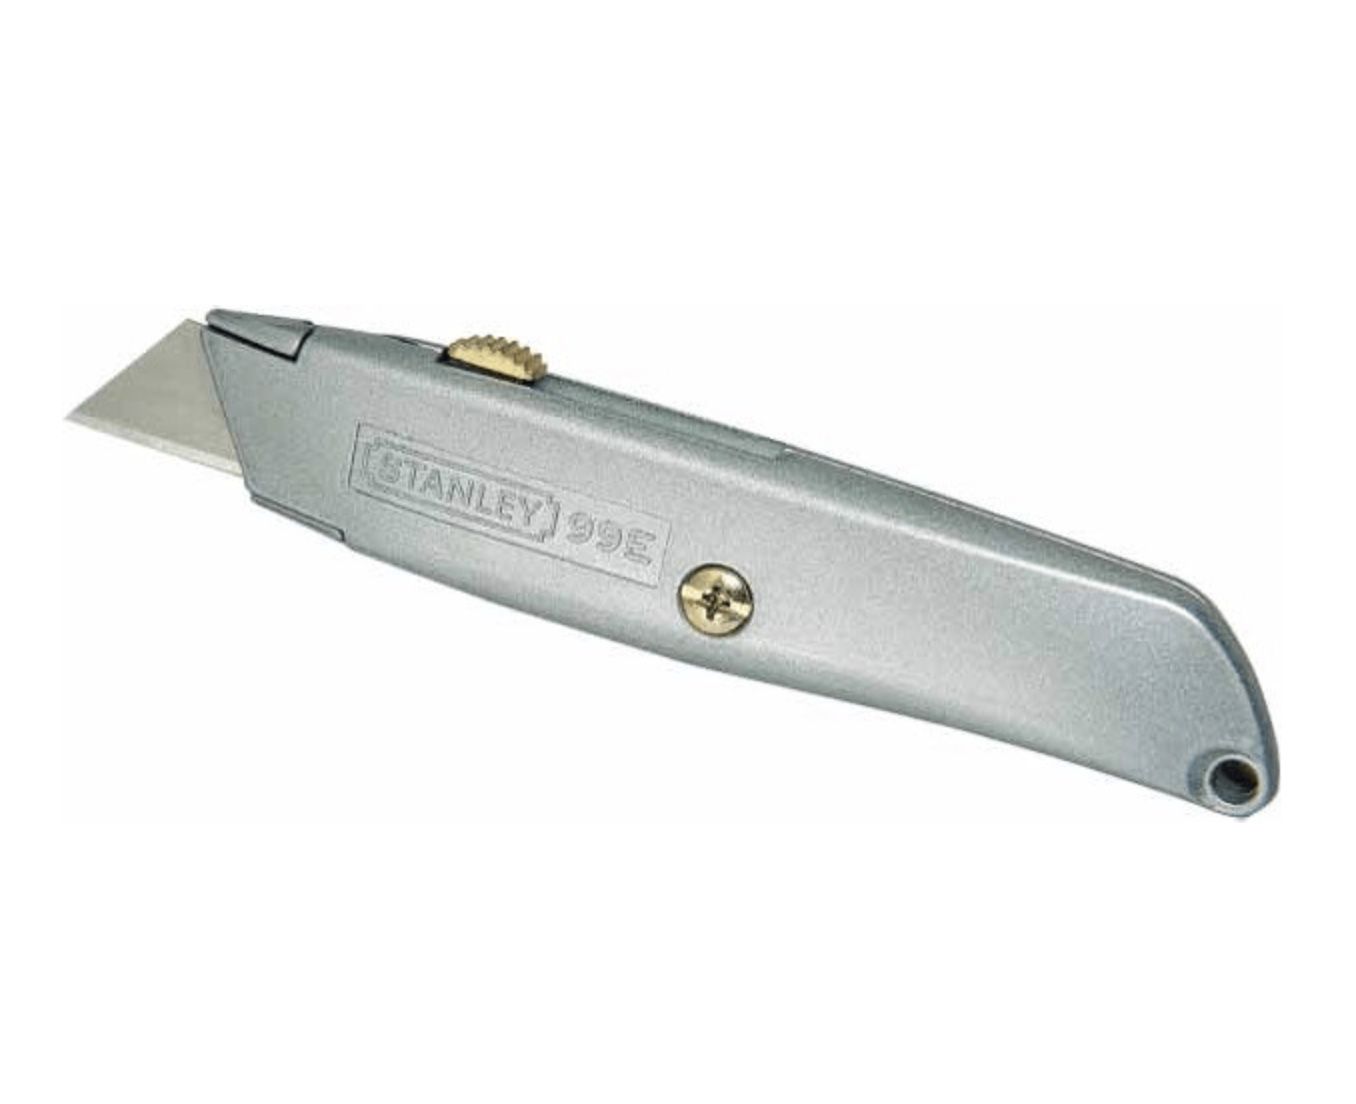 Stanley Messer 99 E 2-10-199 mit einziehbarer Klinge für 5,56€ (statt 11€)